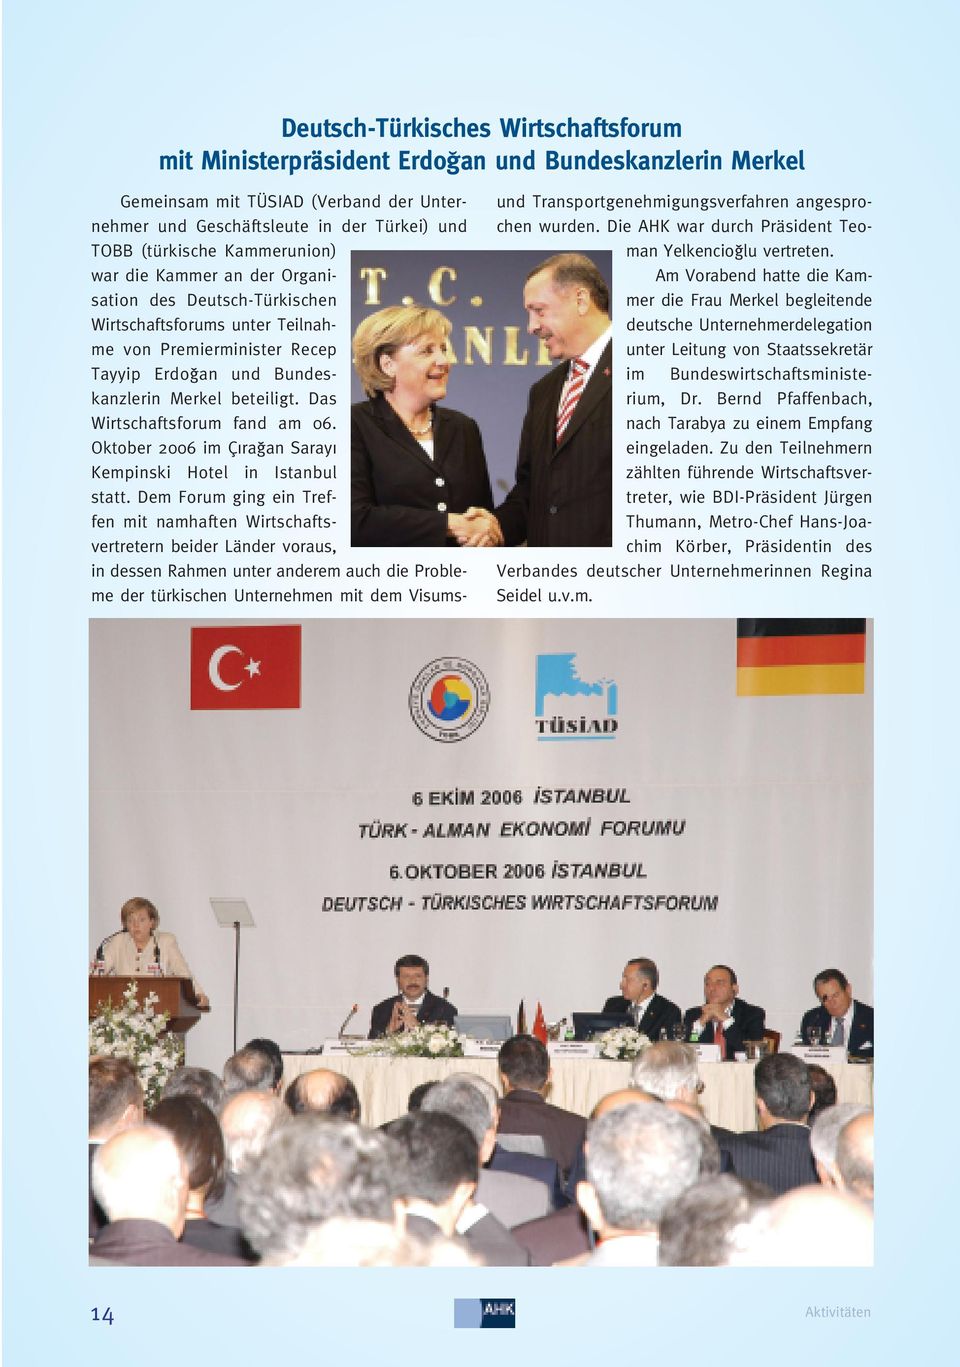 Das Wirtschaftsforum fand am 06. Oktober 2006 im Ç ra an Saray Kempinski Hotel in Istanbul statt.